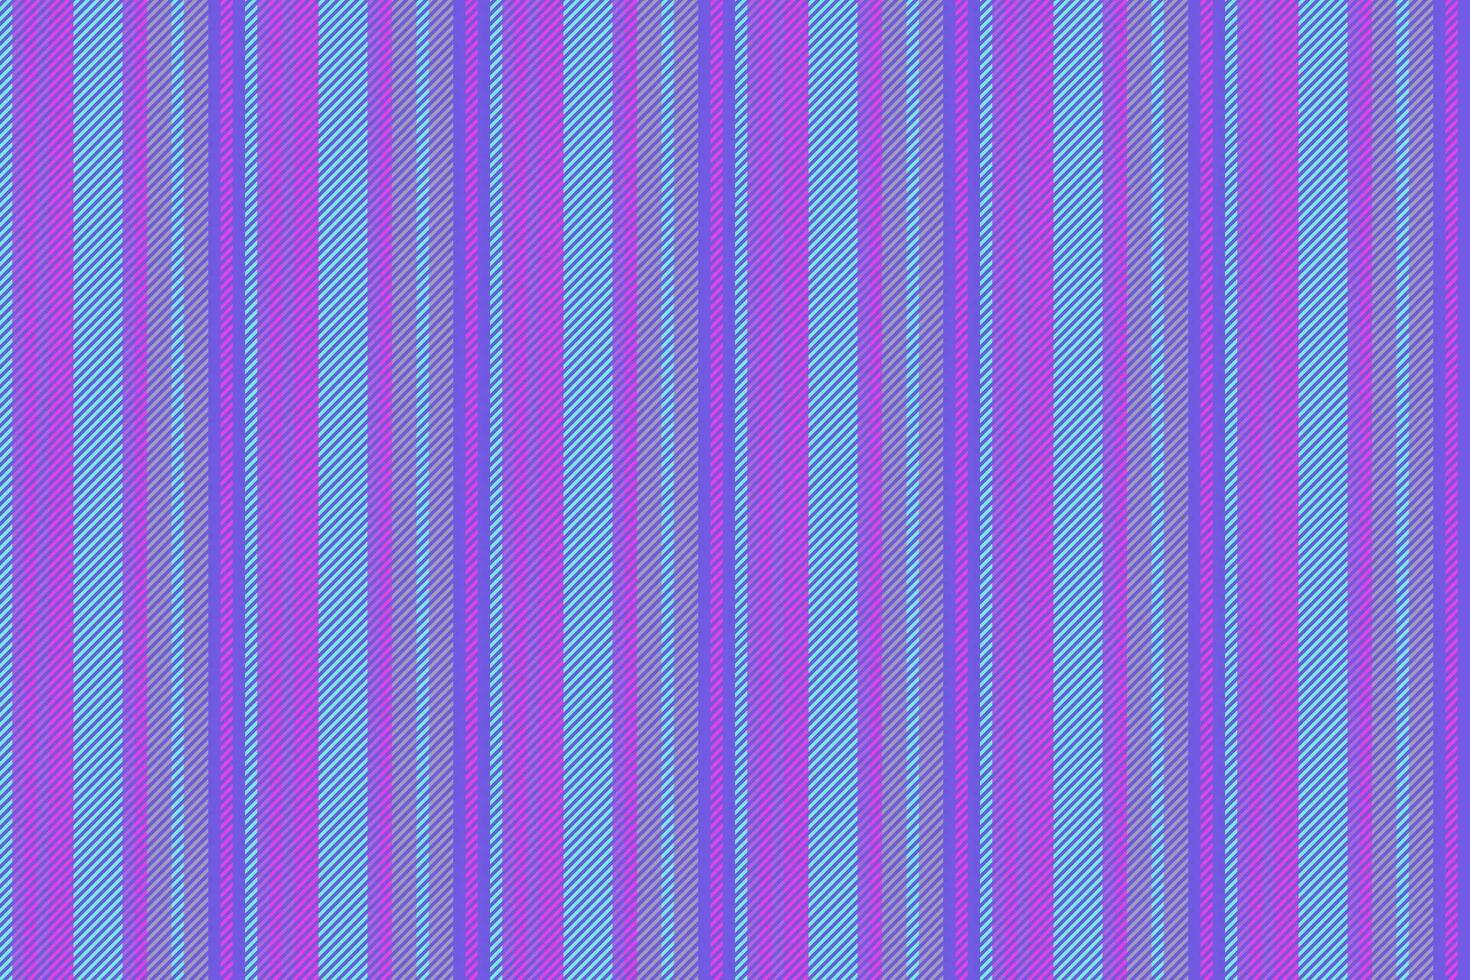 Textil- Textur Hintergrund von Muster nahtlos Streifen mit ein Stoff Vektor Vertikale Linien.